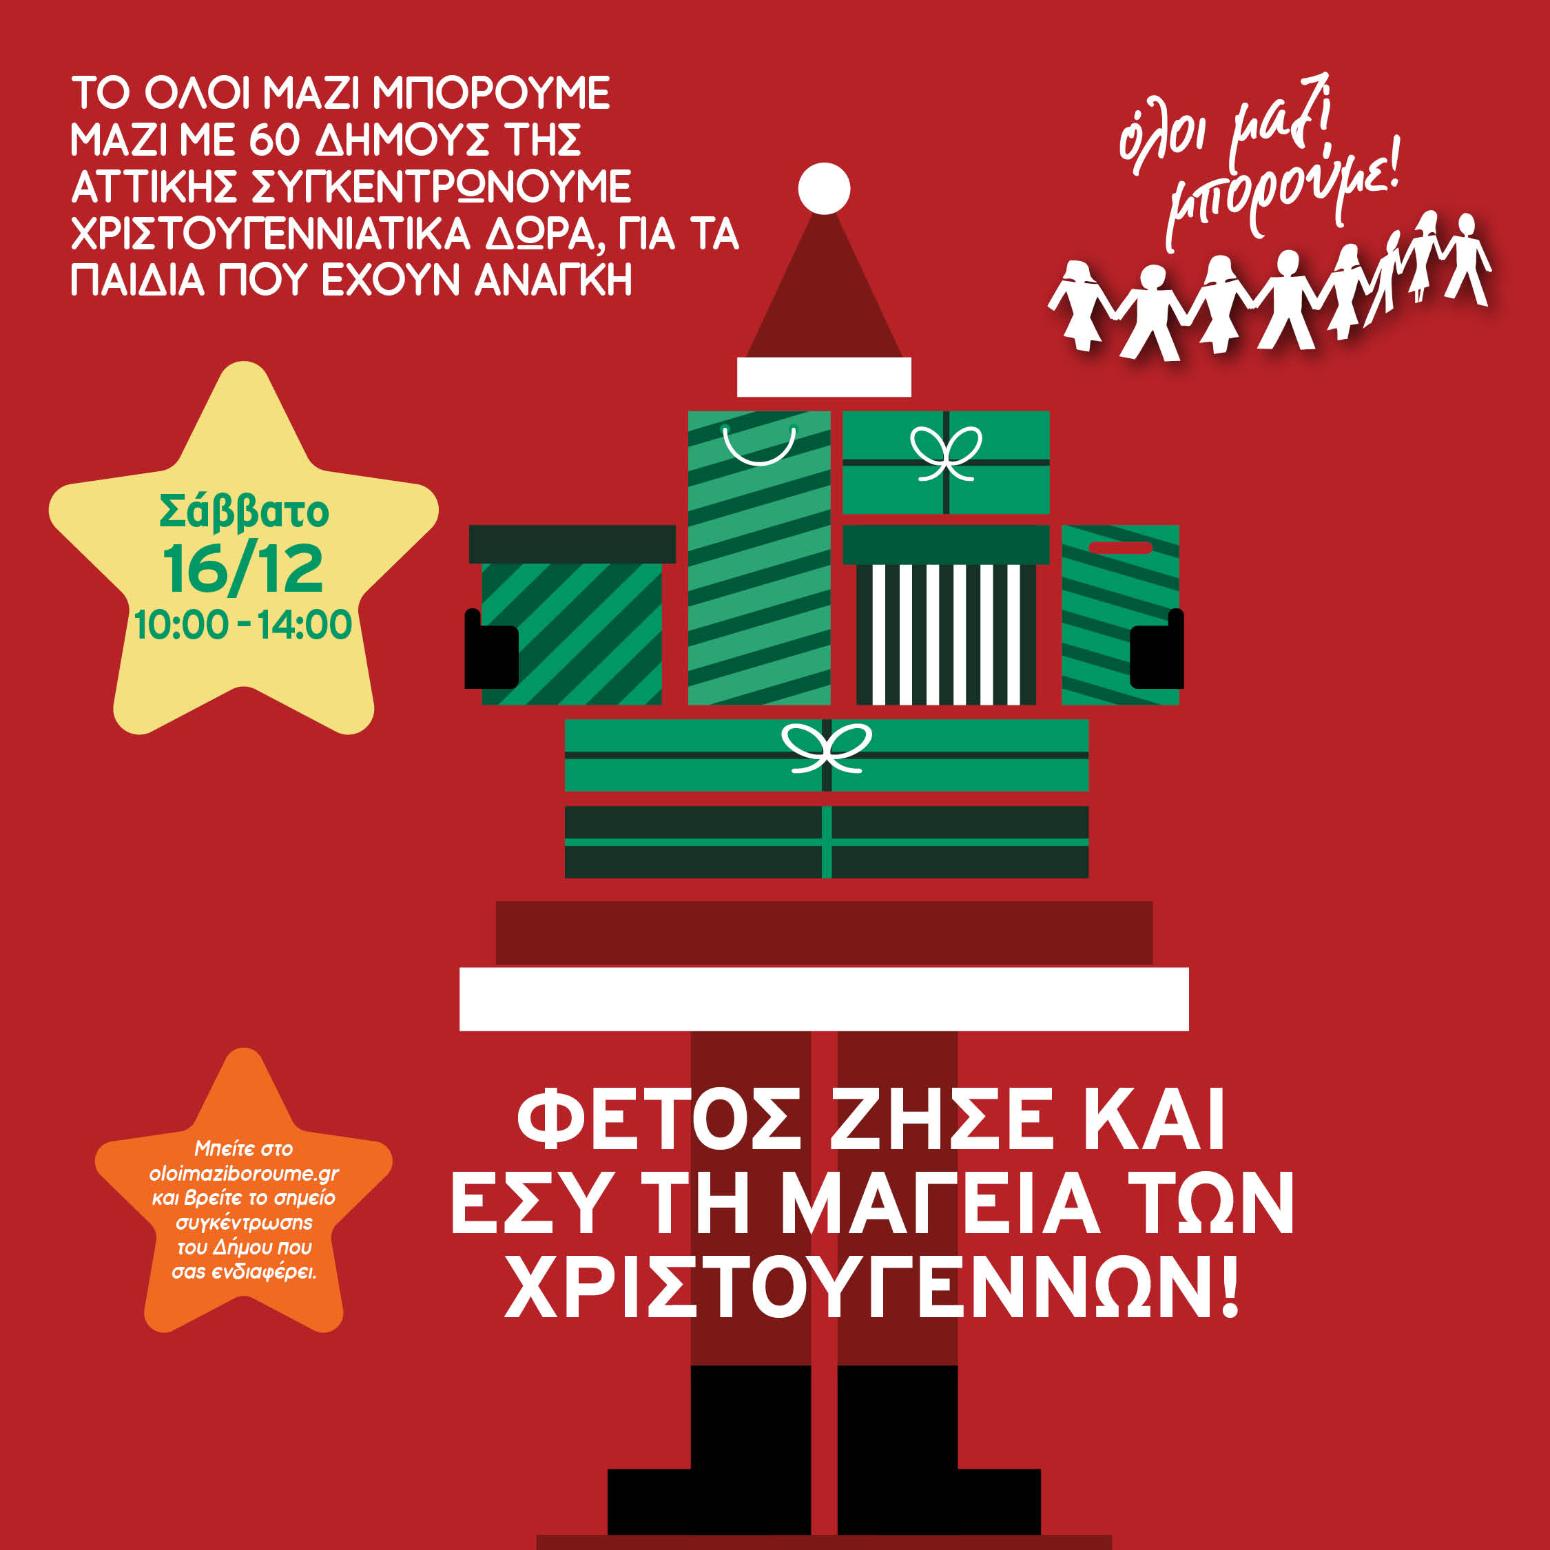 Όλοι Μαζί Μπορούμε: Συγκέντρωση Χριστουγεννιάτικων δώρων σε 60 Δήμους της Αττικής